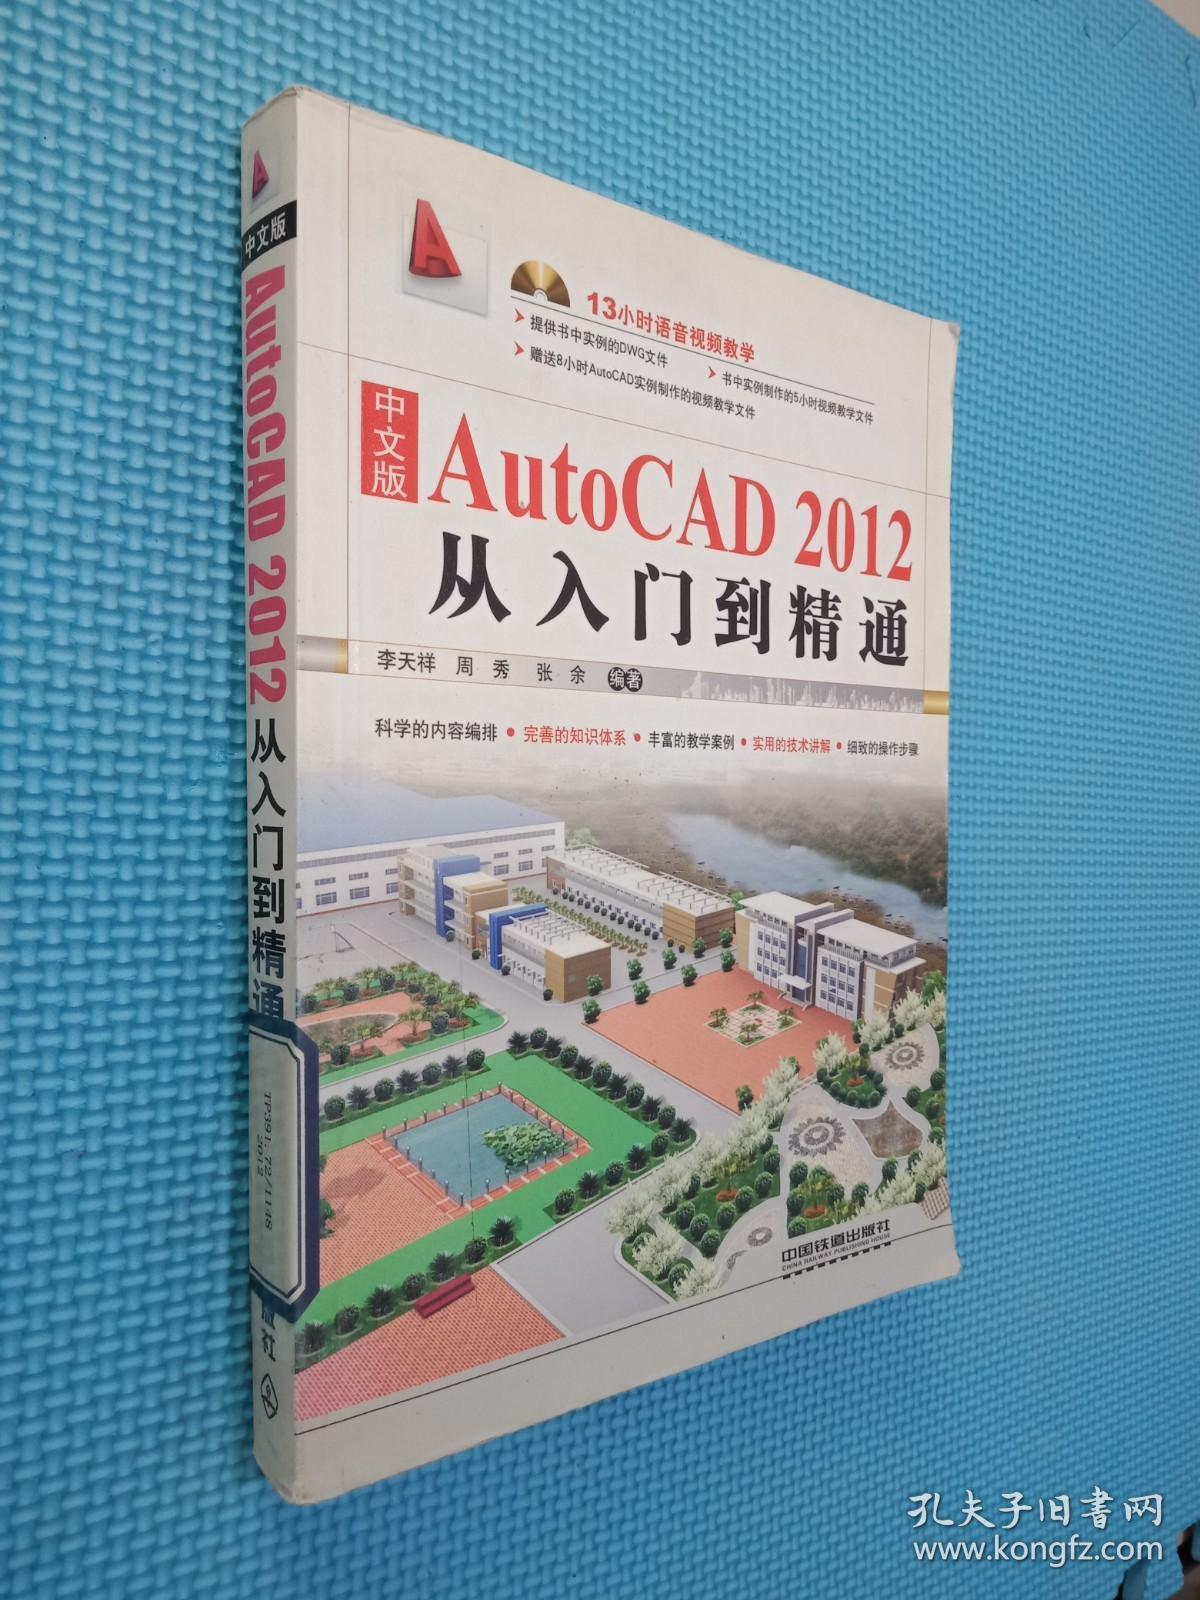 中文版AutoCAD 2012从入门到精通